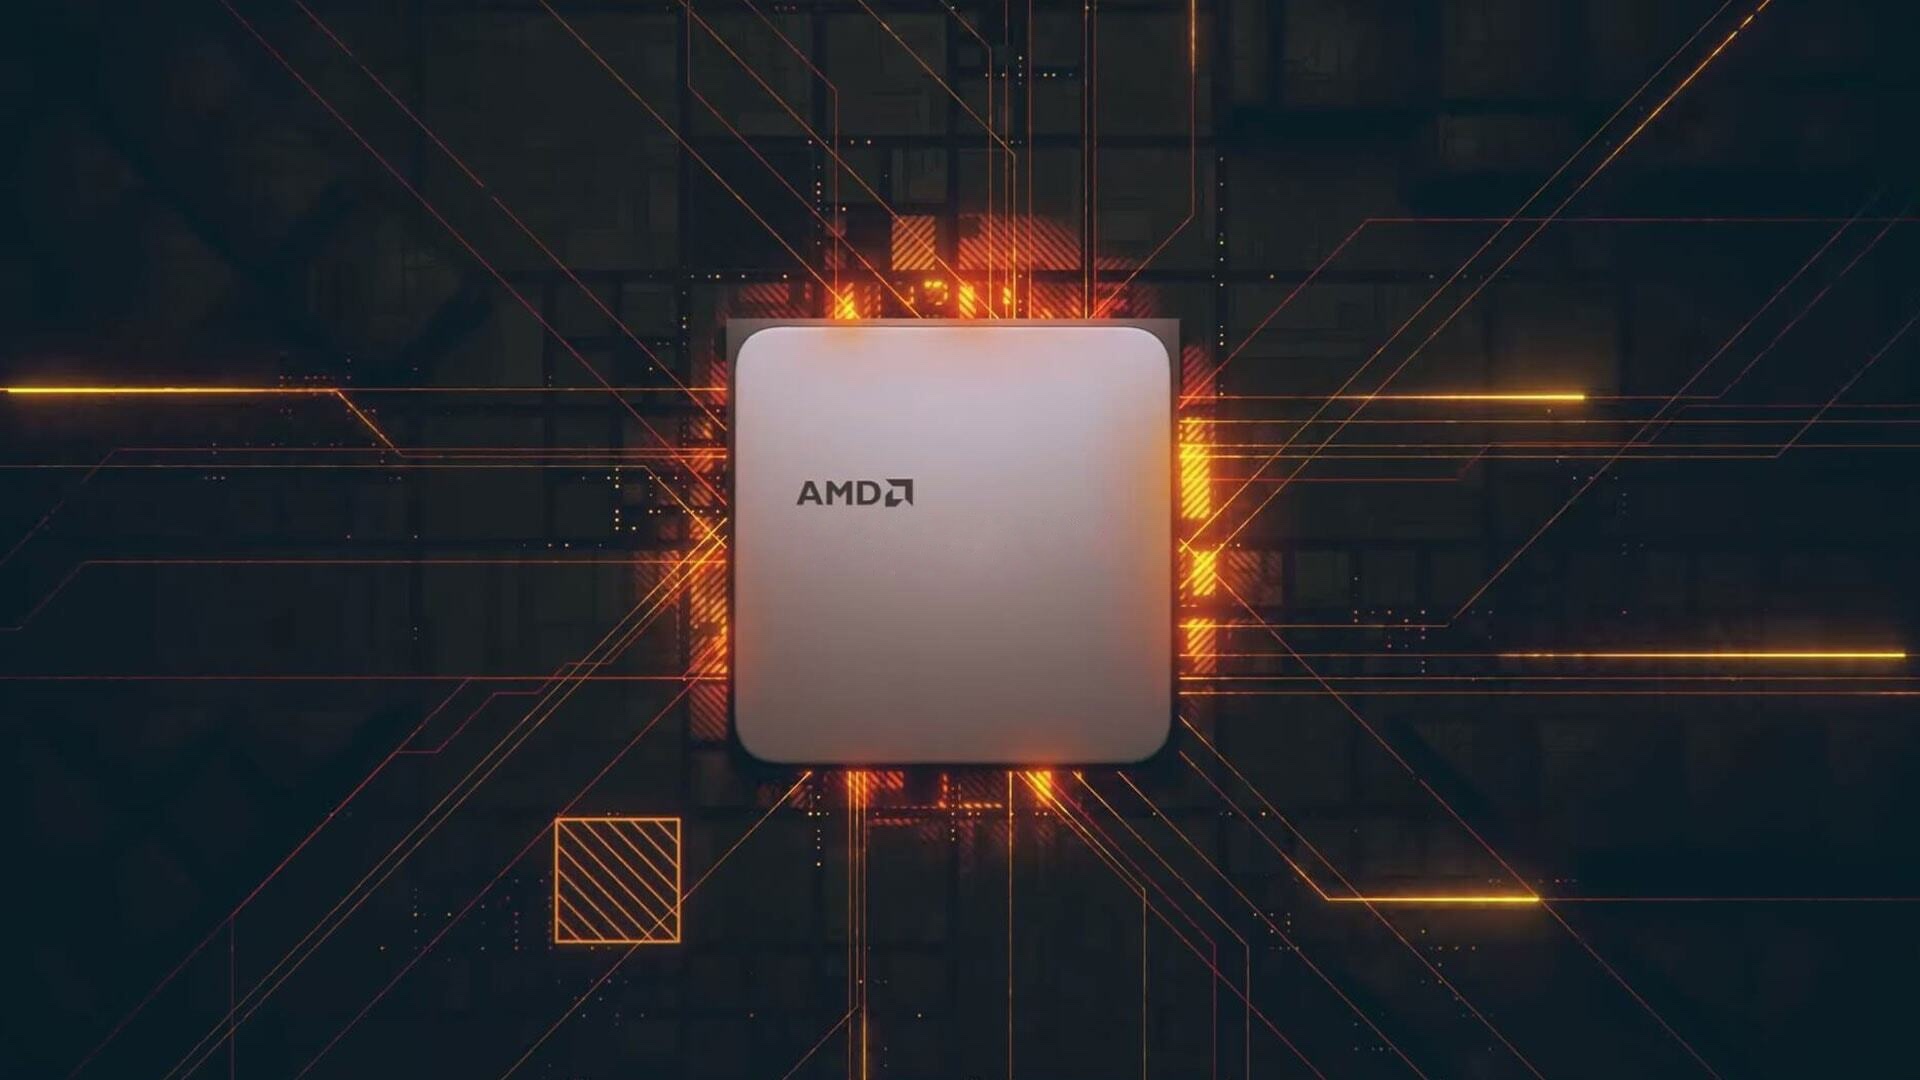   AMD   NVIDIA GTX 1050 Ti  